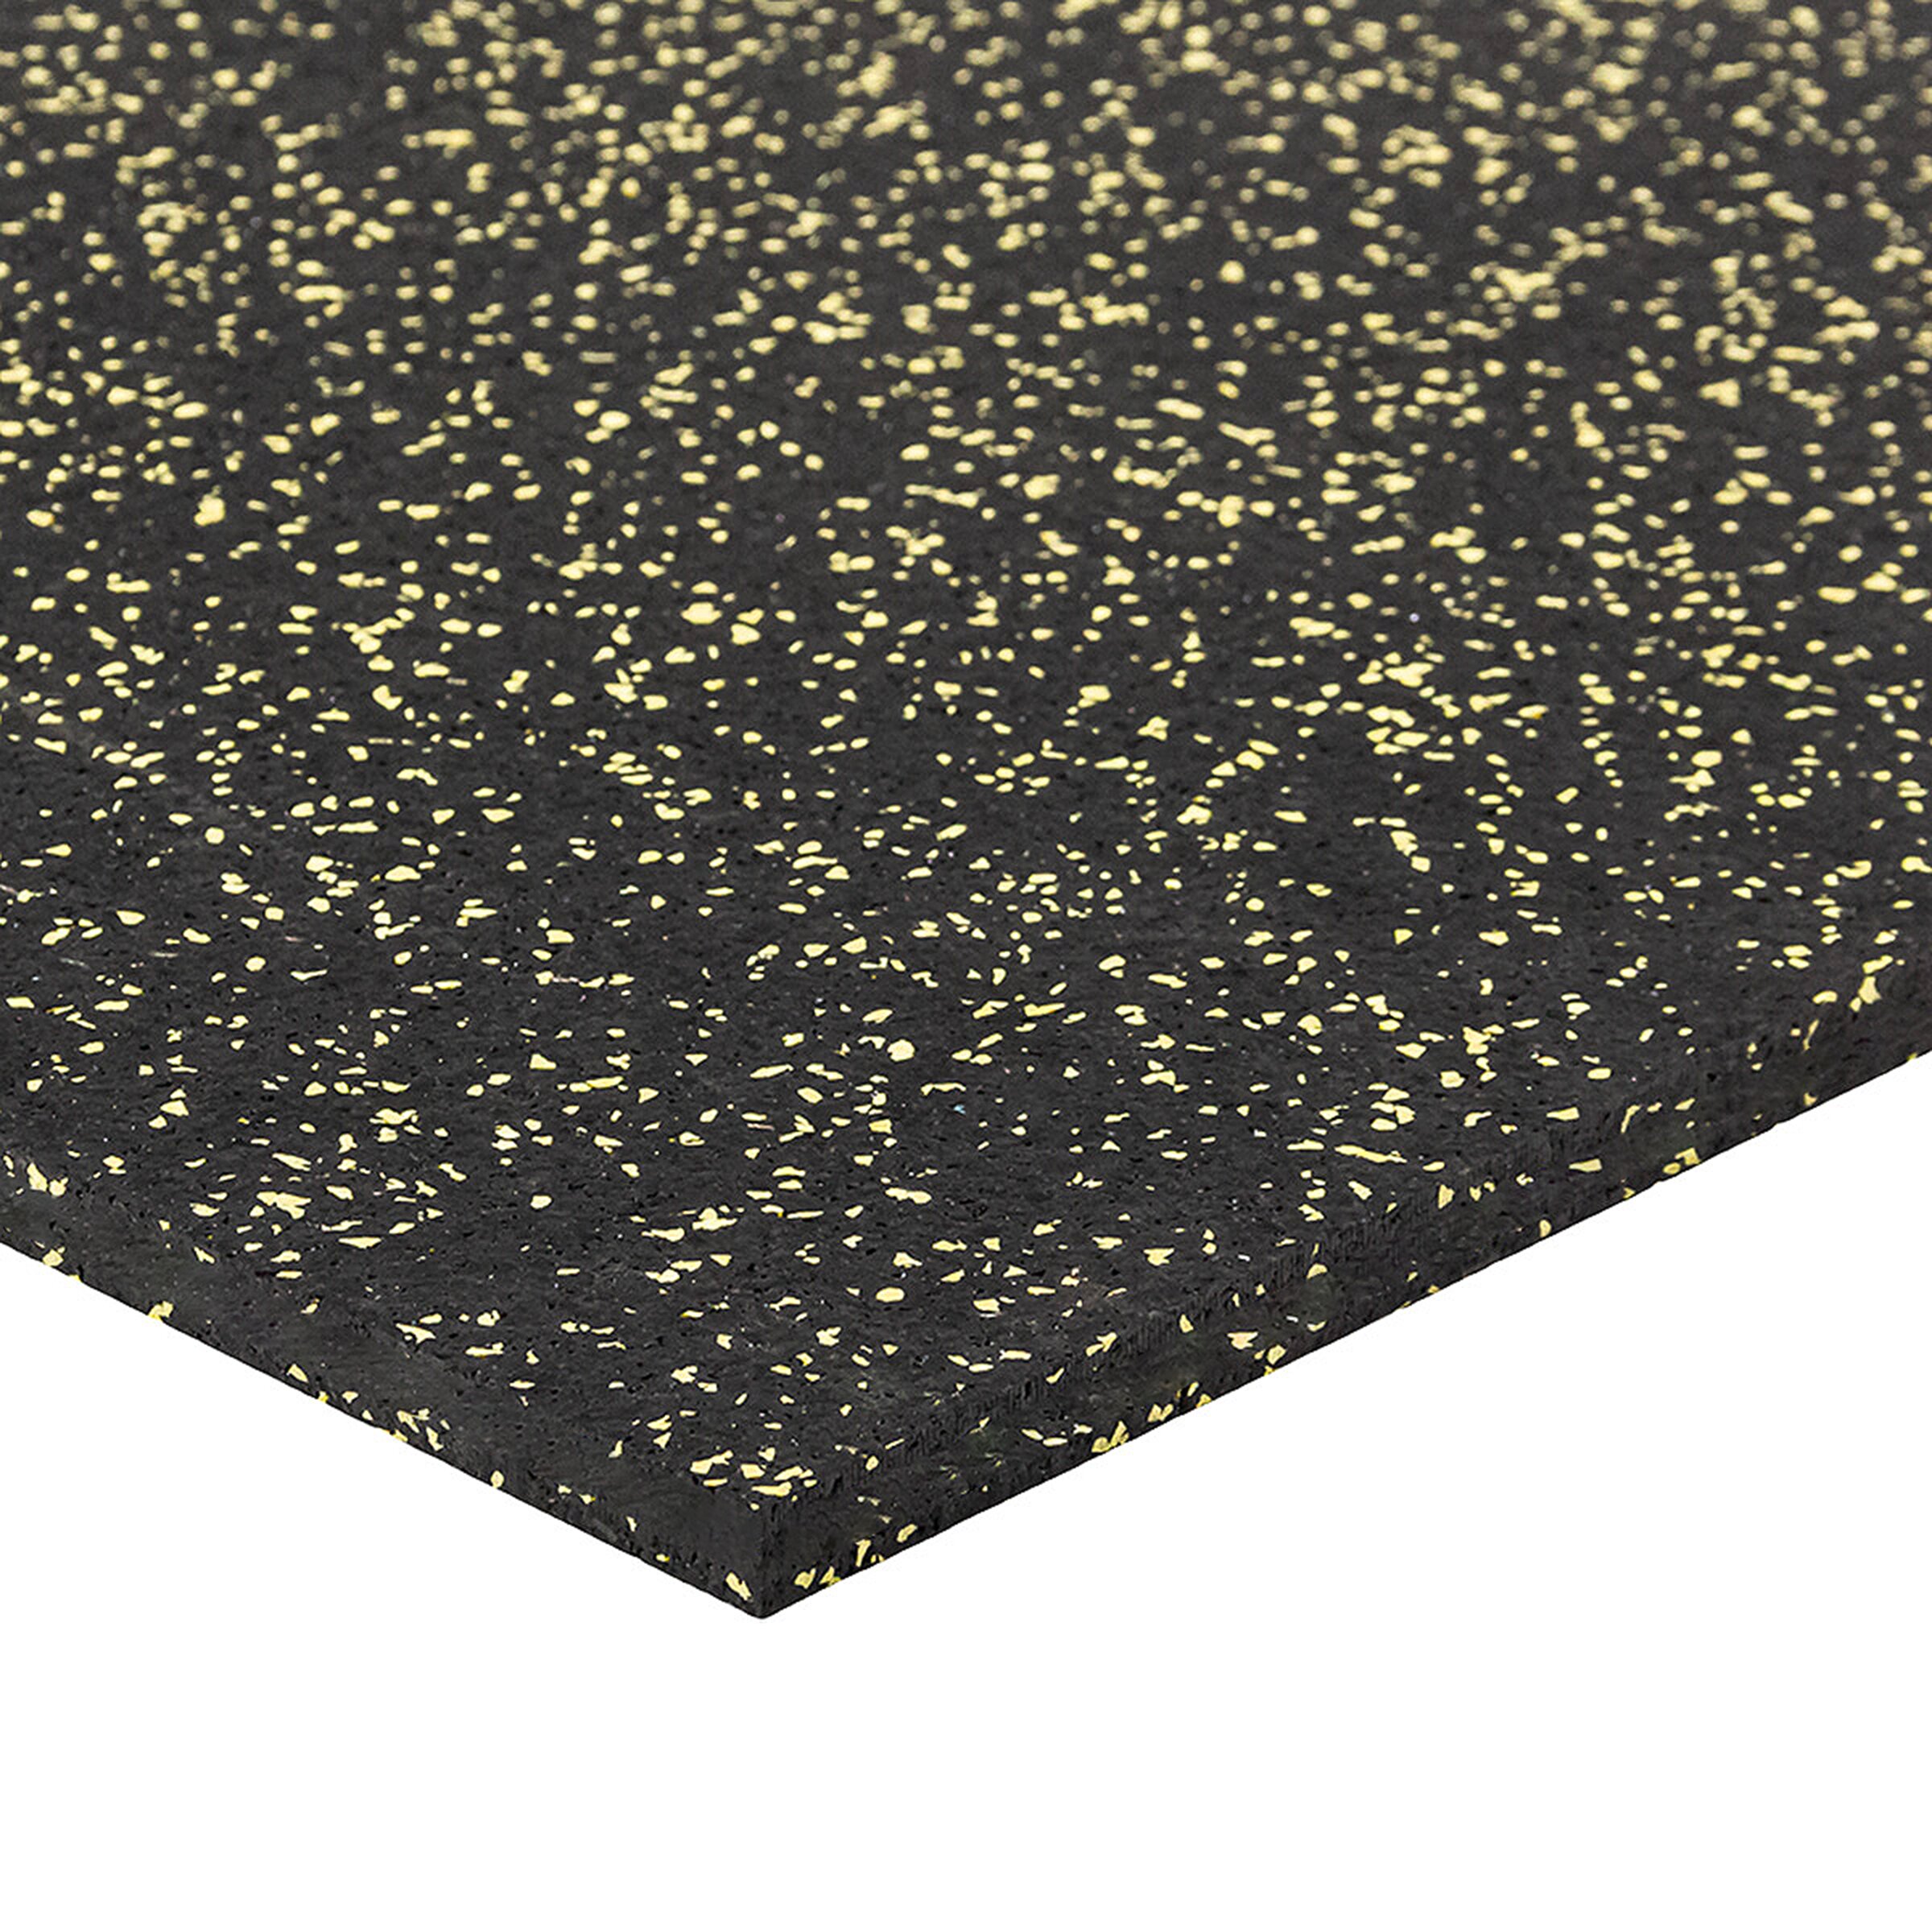 Černo-žlutá gumová modulová puzzle dlažba (roh) FLOMA FitFlo SF1050 - délka 100 cm, šířka 100 cm, výška 1,6 cm